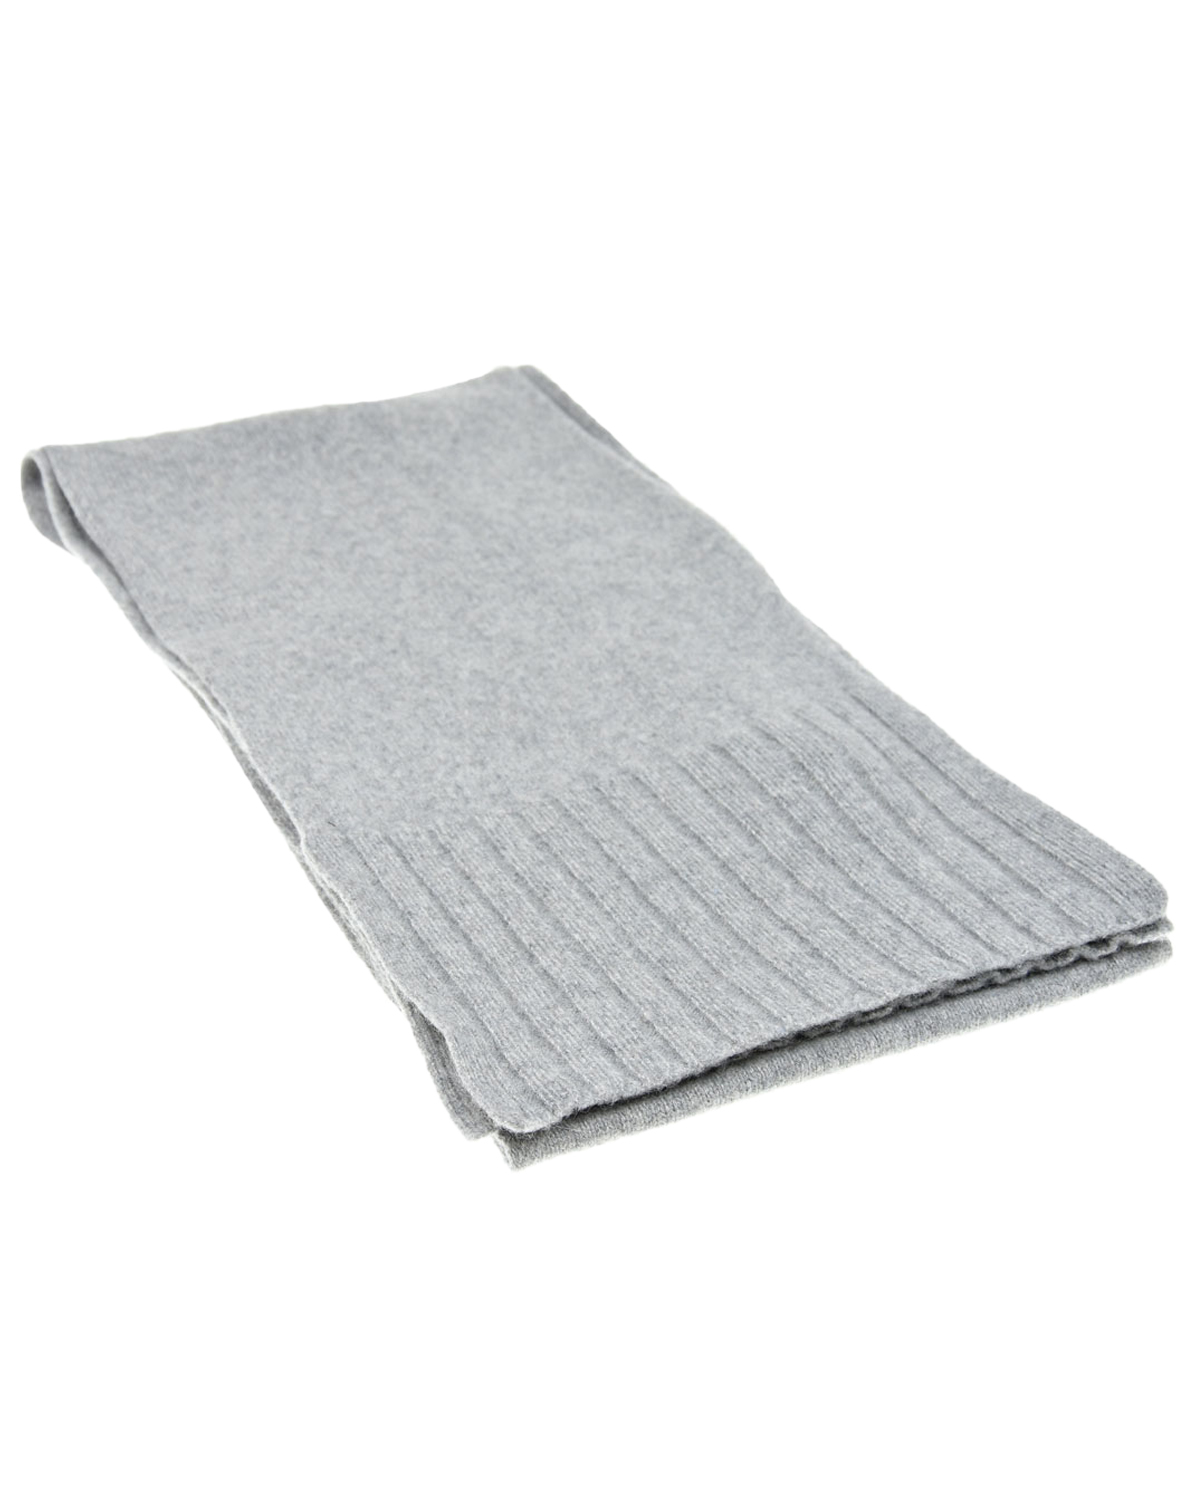 Серый шарф из кашемира и шерсти CAPO детский, размер unica